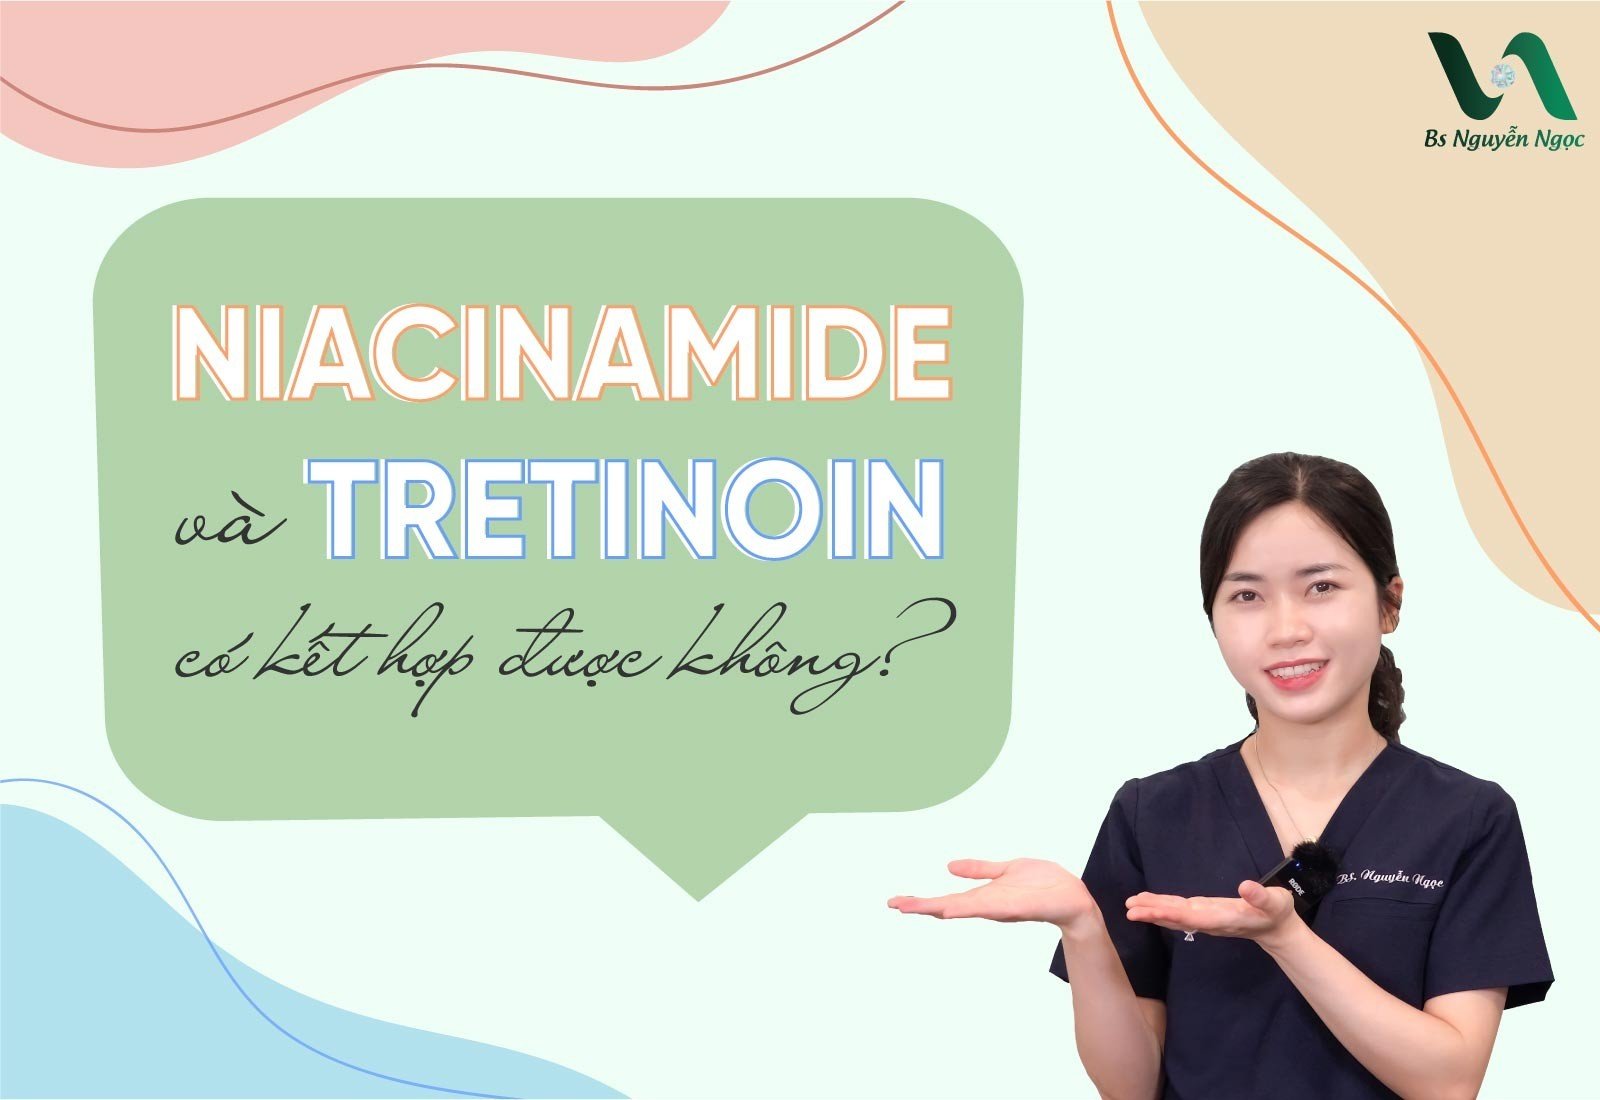 Niacinamide và Tretinoin có kết hợp được không?